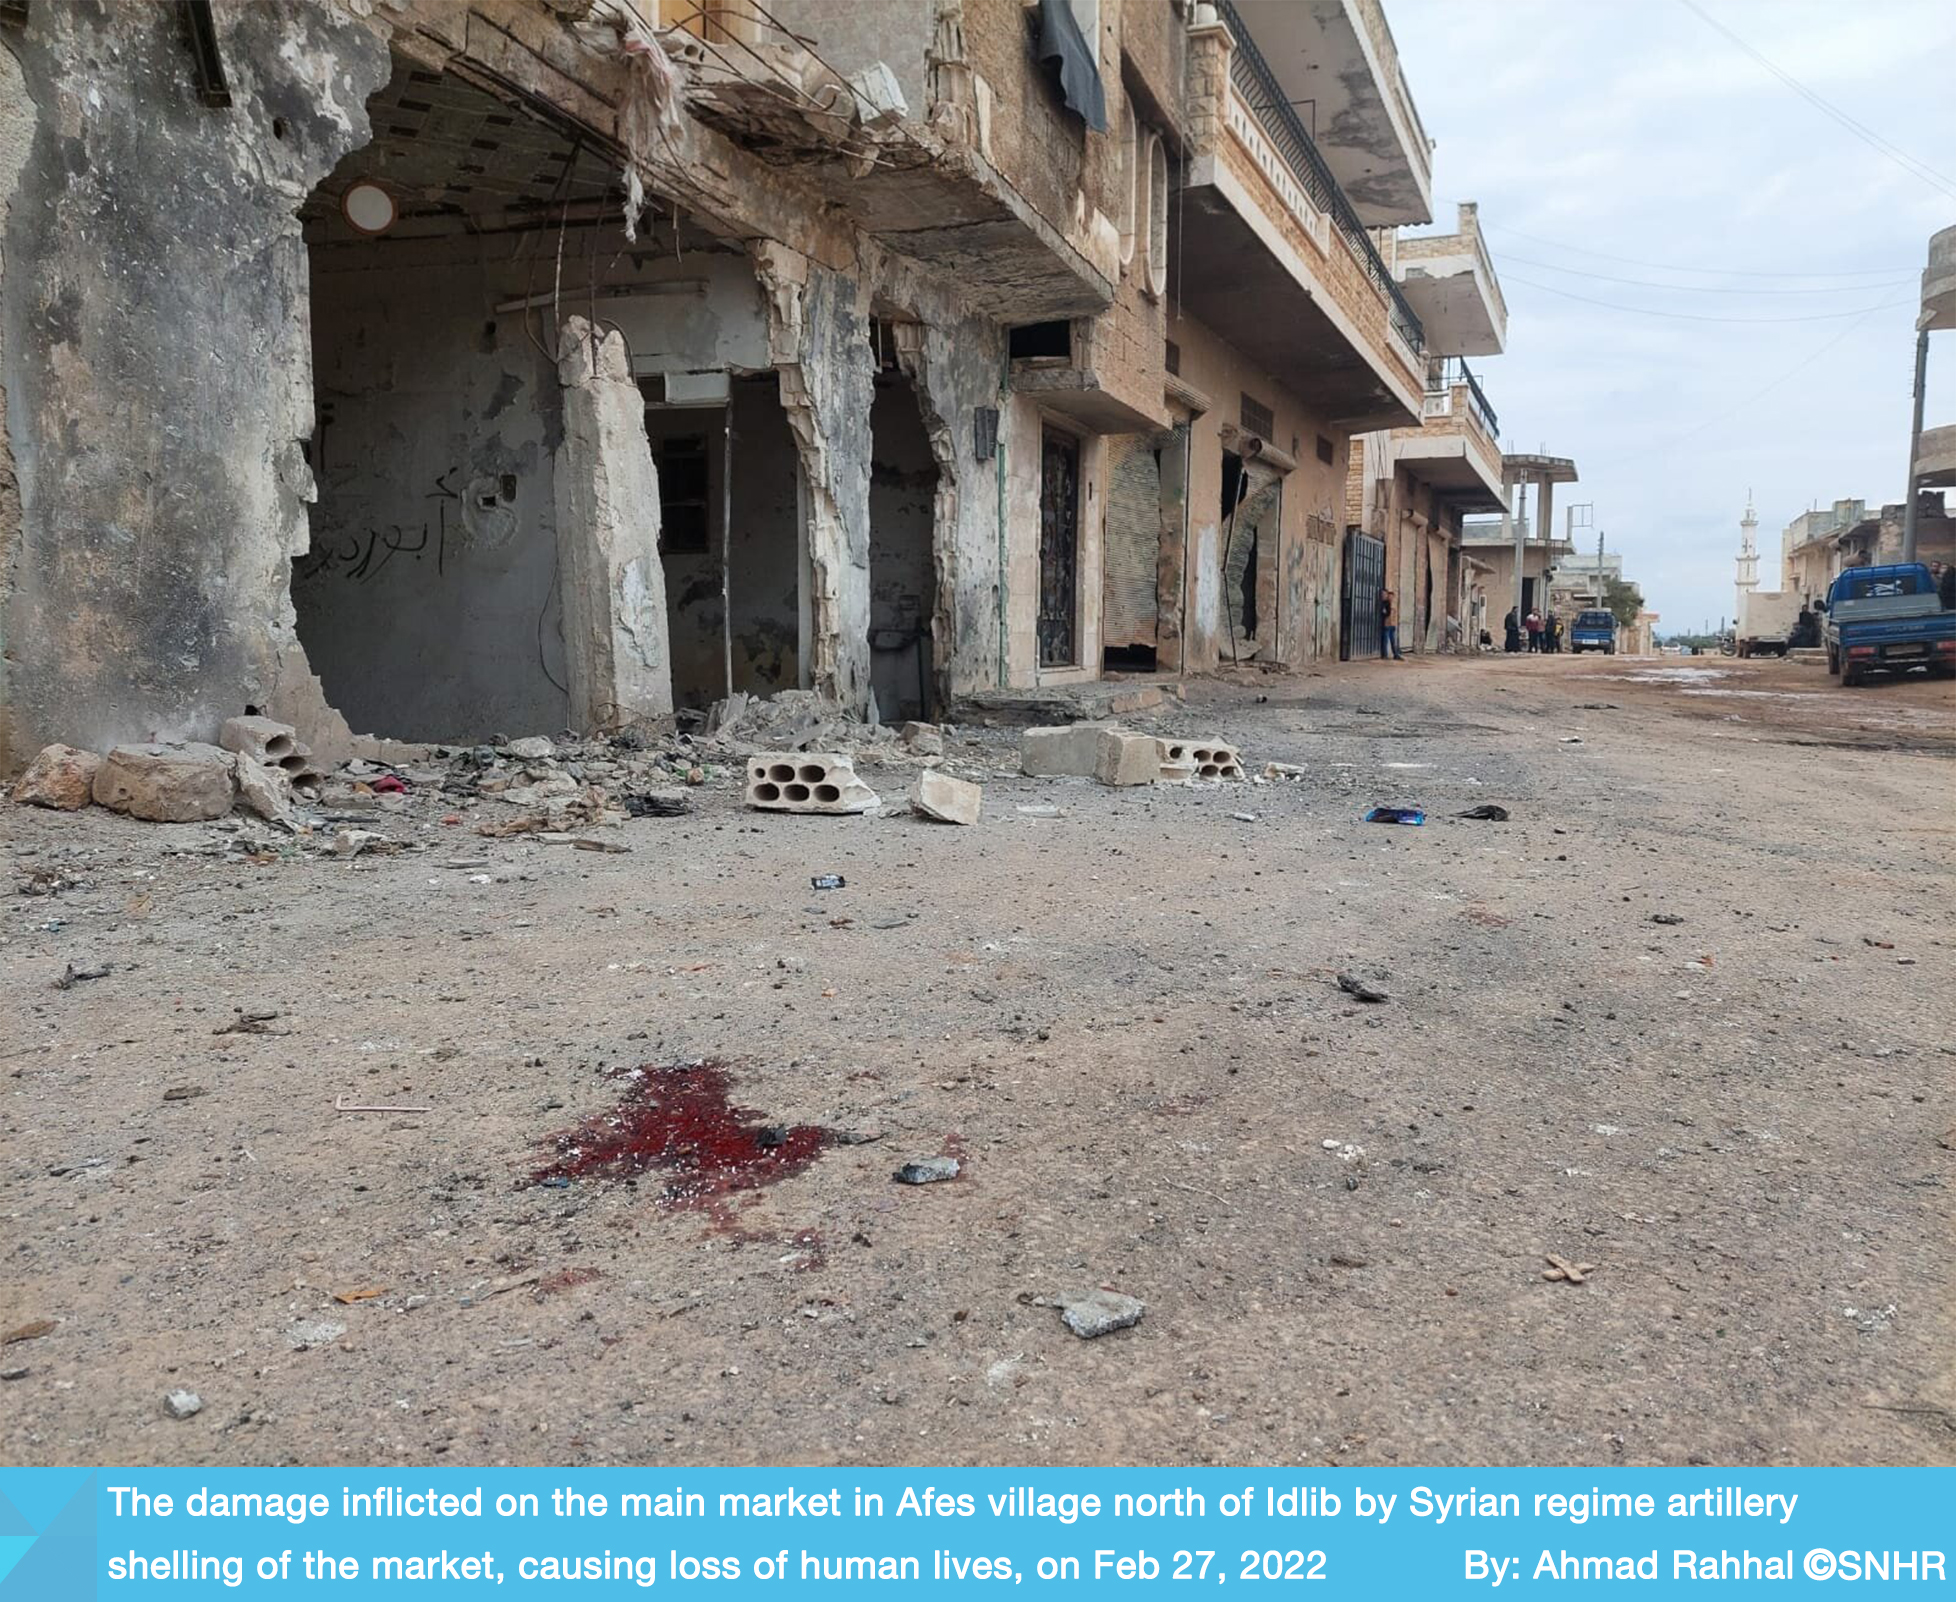 قصف النظام السوري على سوق في إدلب في سوريا يخلف ضحايا مدنيين 27-2-2022